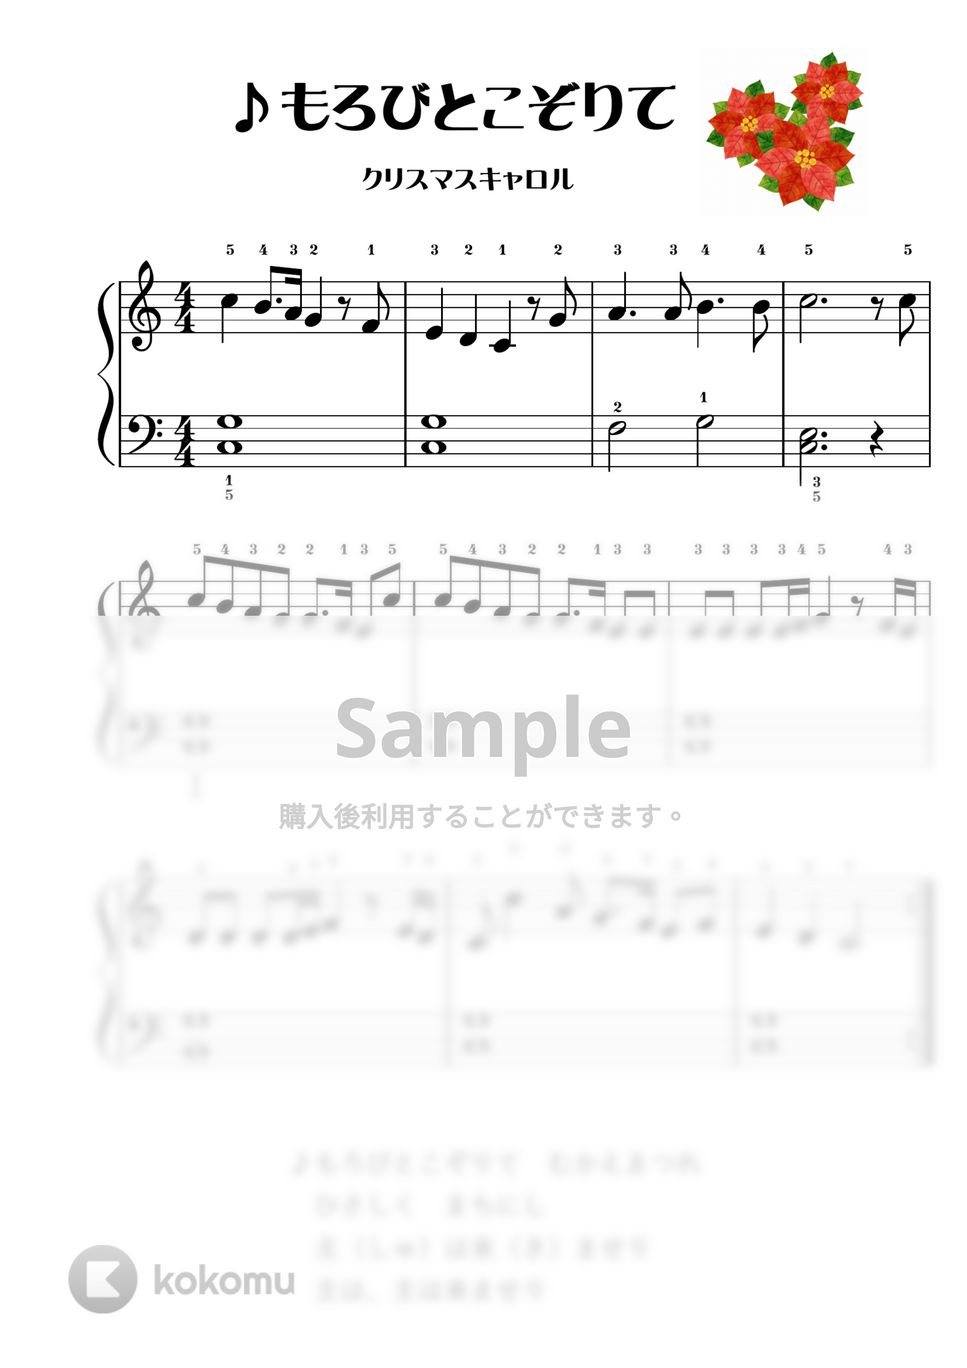 クリスマスキャロル - 【ピアノ初級】もろびとこぞりて♪かんたん２種類 (クリスマス,クリスマスキャロル) by ピアノのせんせいの楽譜集